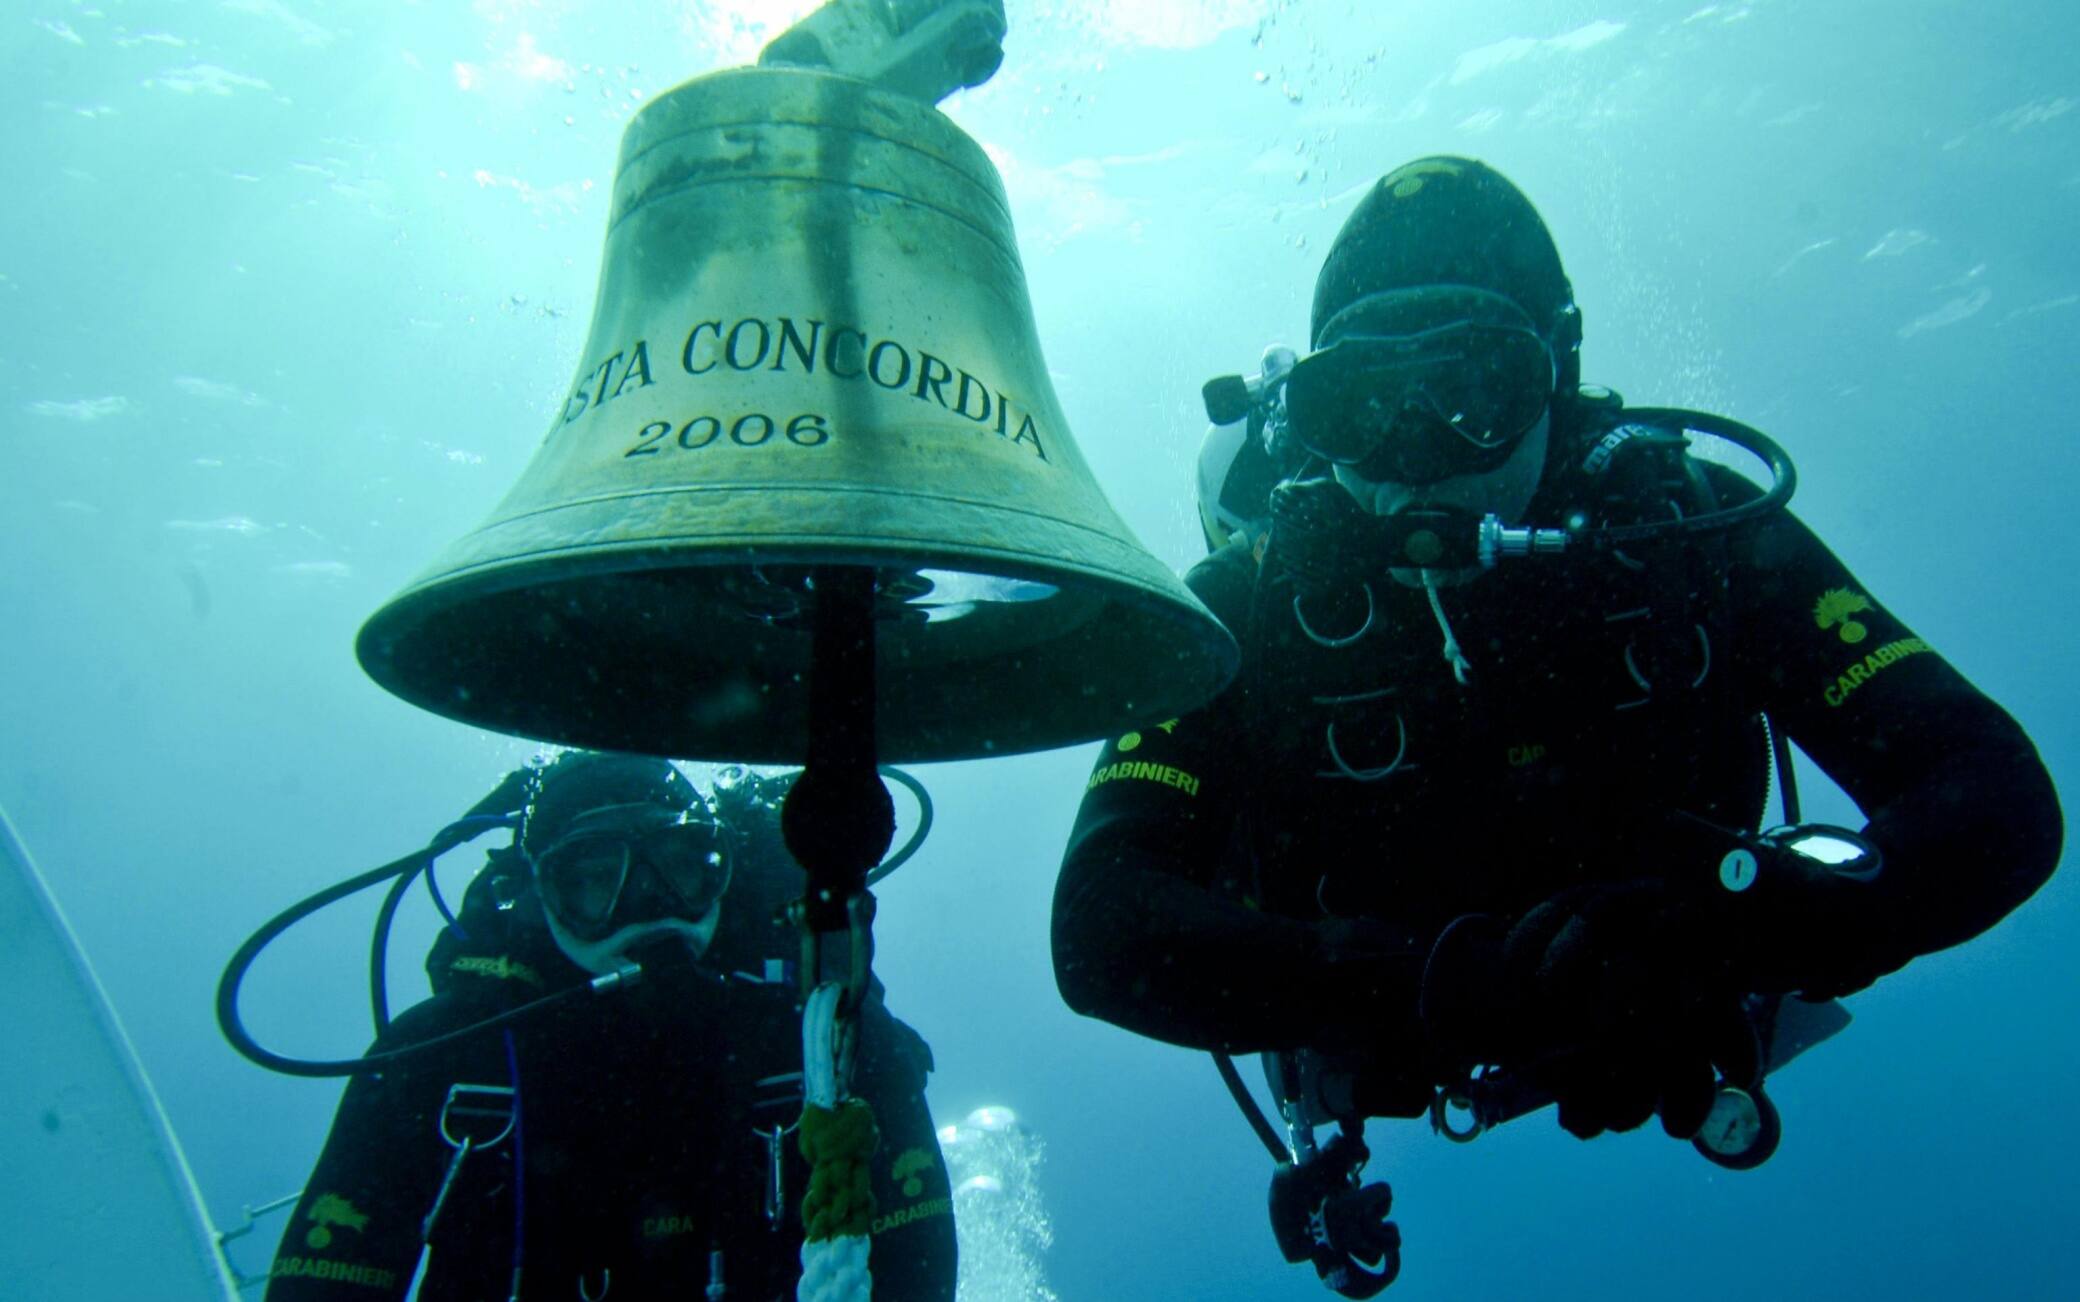 La campana della Costa Concordia